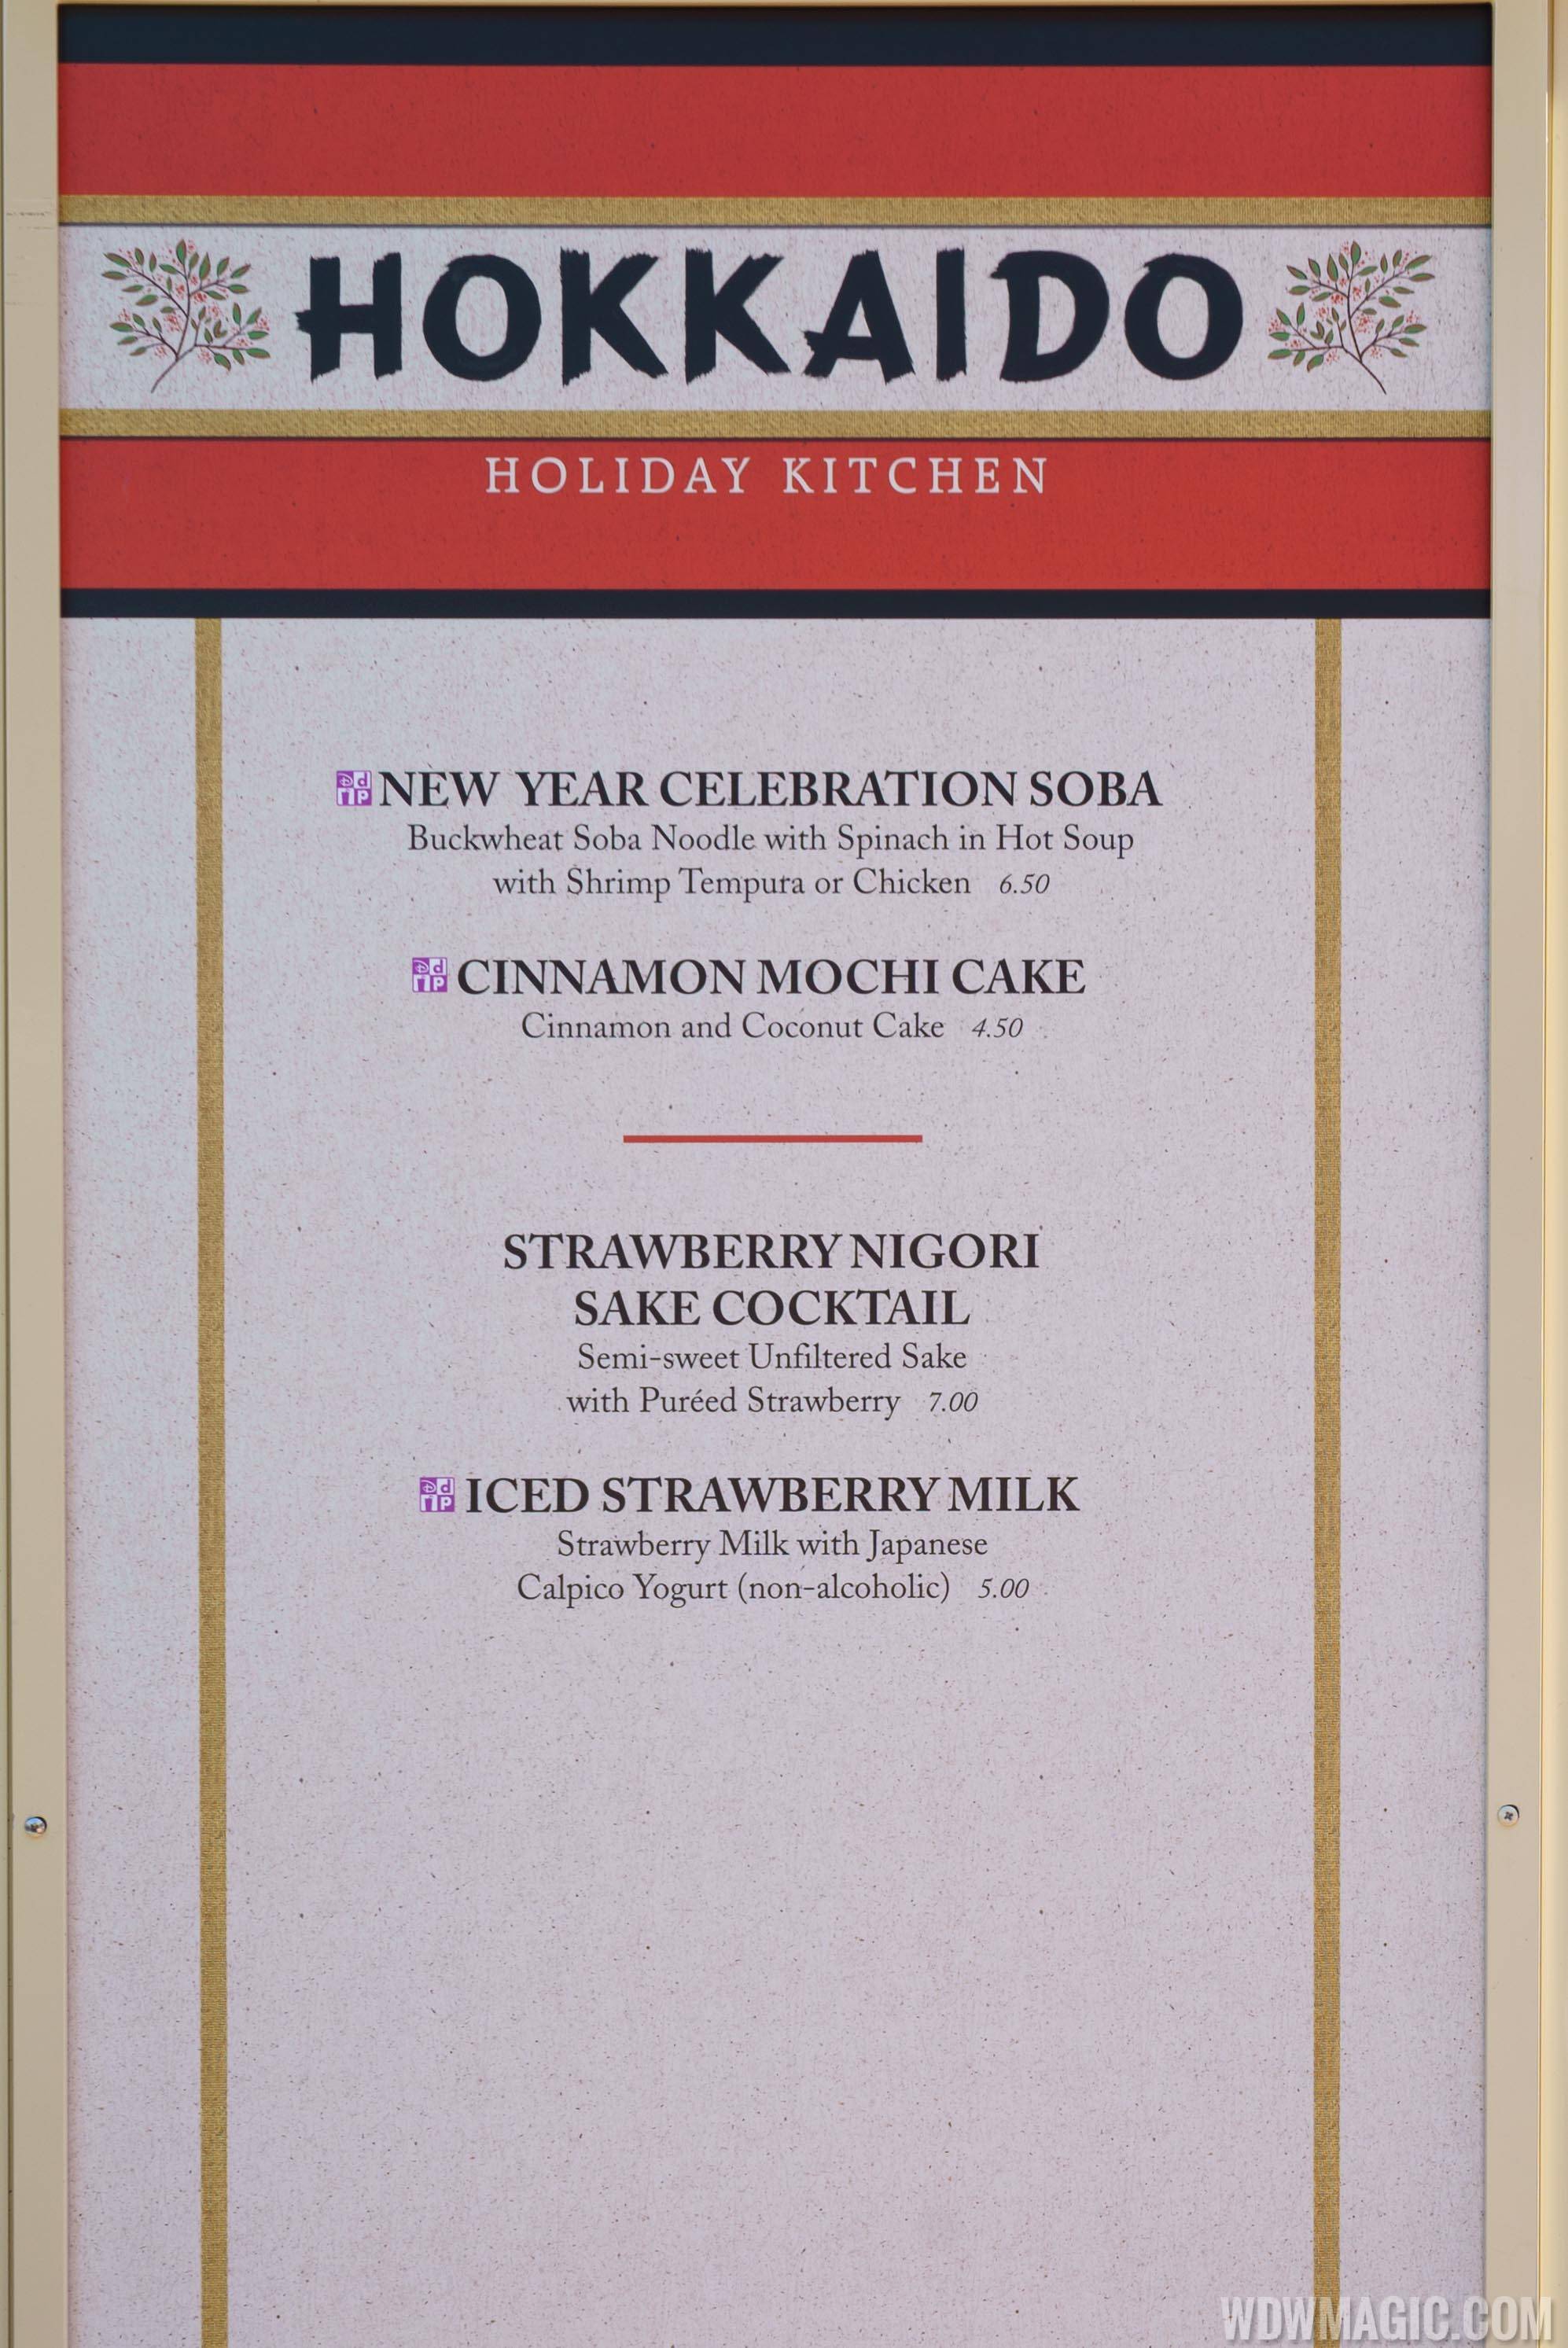 2017 Epcot Holiday Kitchens - Hokkaido menu